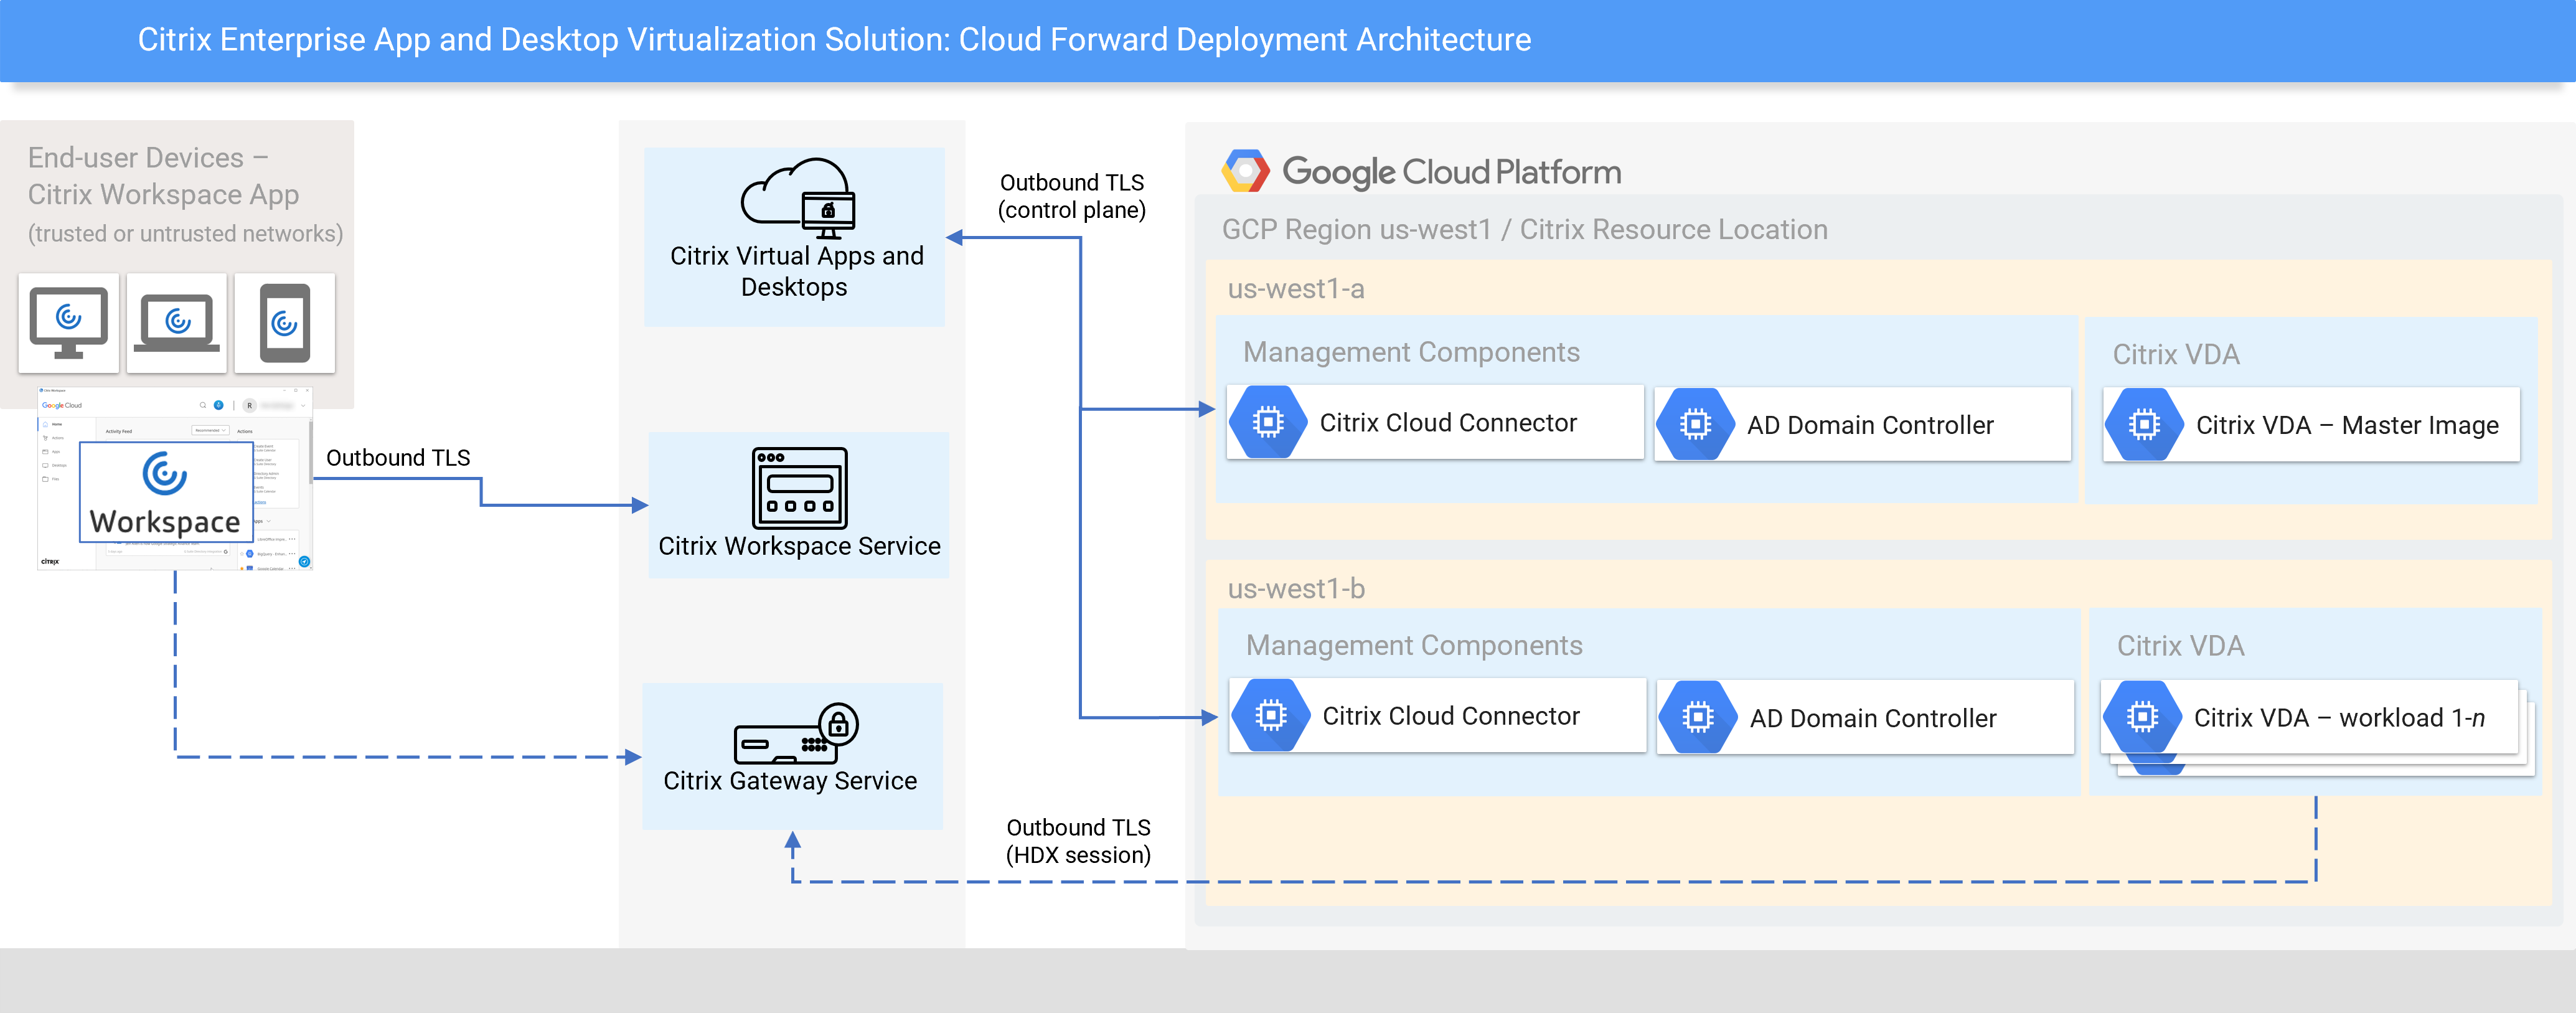 arquitectura de implementación hacia adelante en la nube